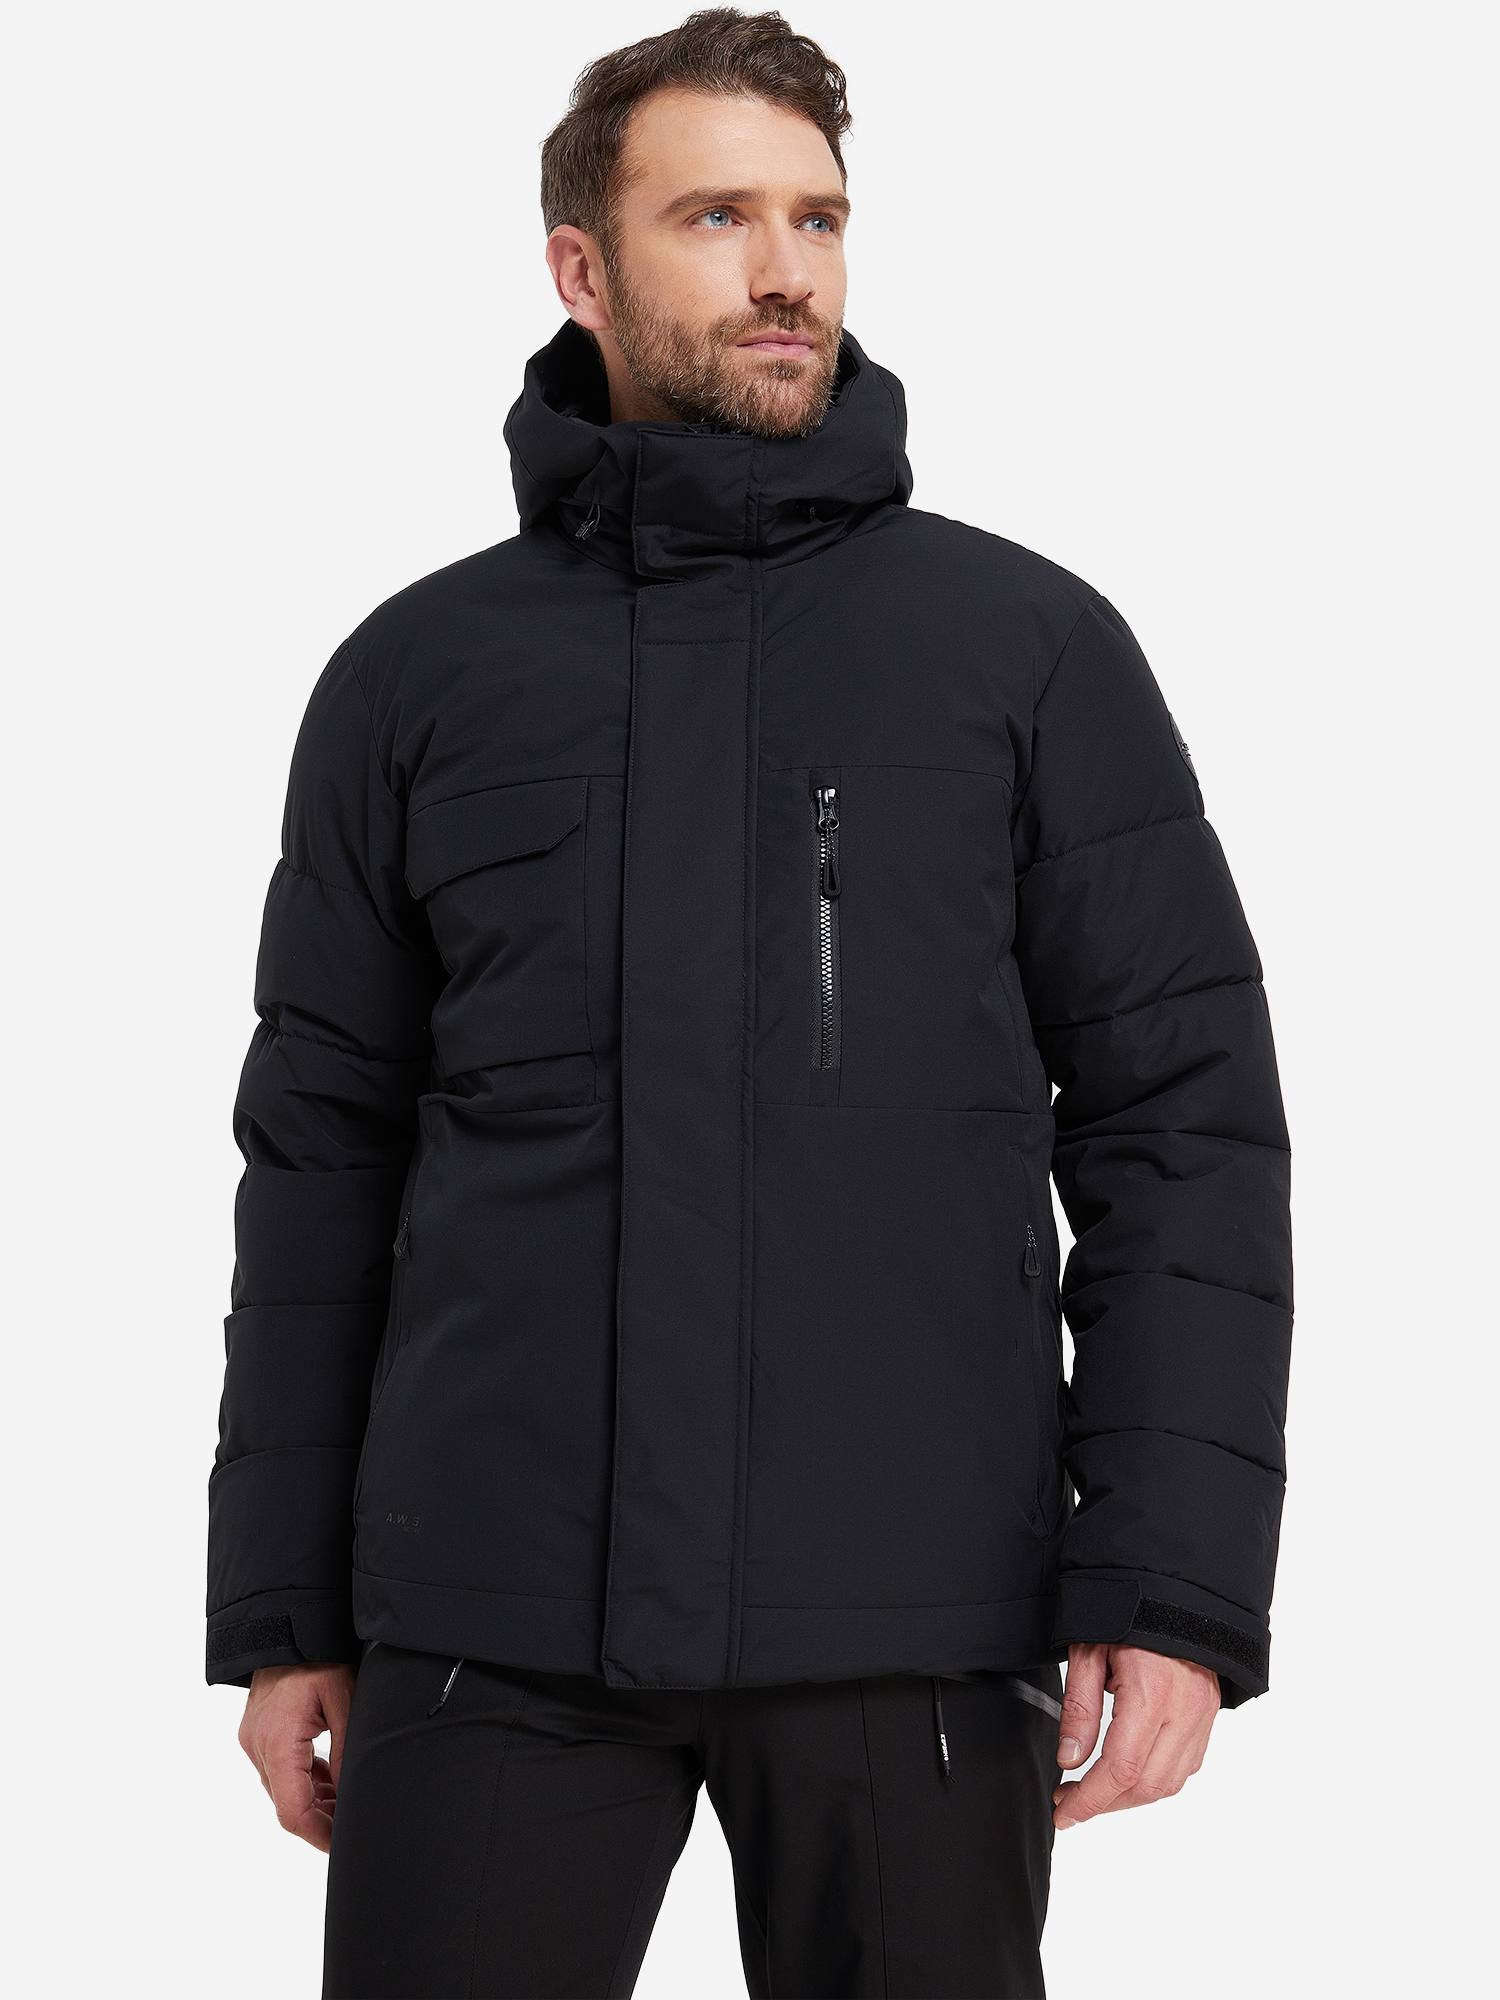 Куртка утепленная мужская IcePeak Carver, Черный куртка утепленная мужская icepeak albers